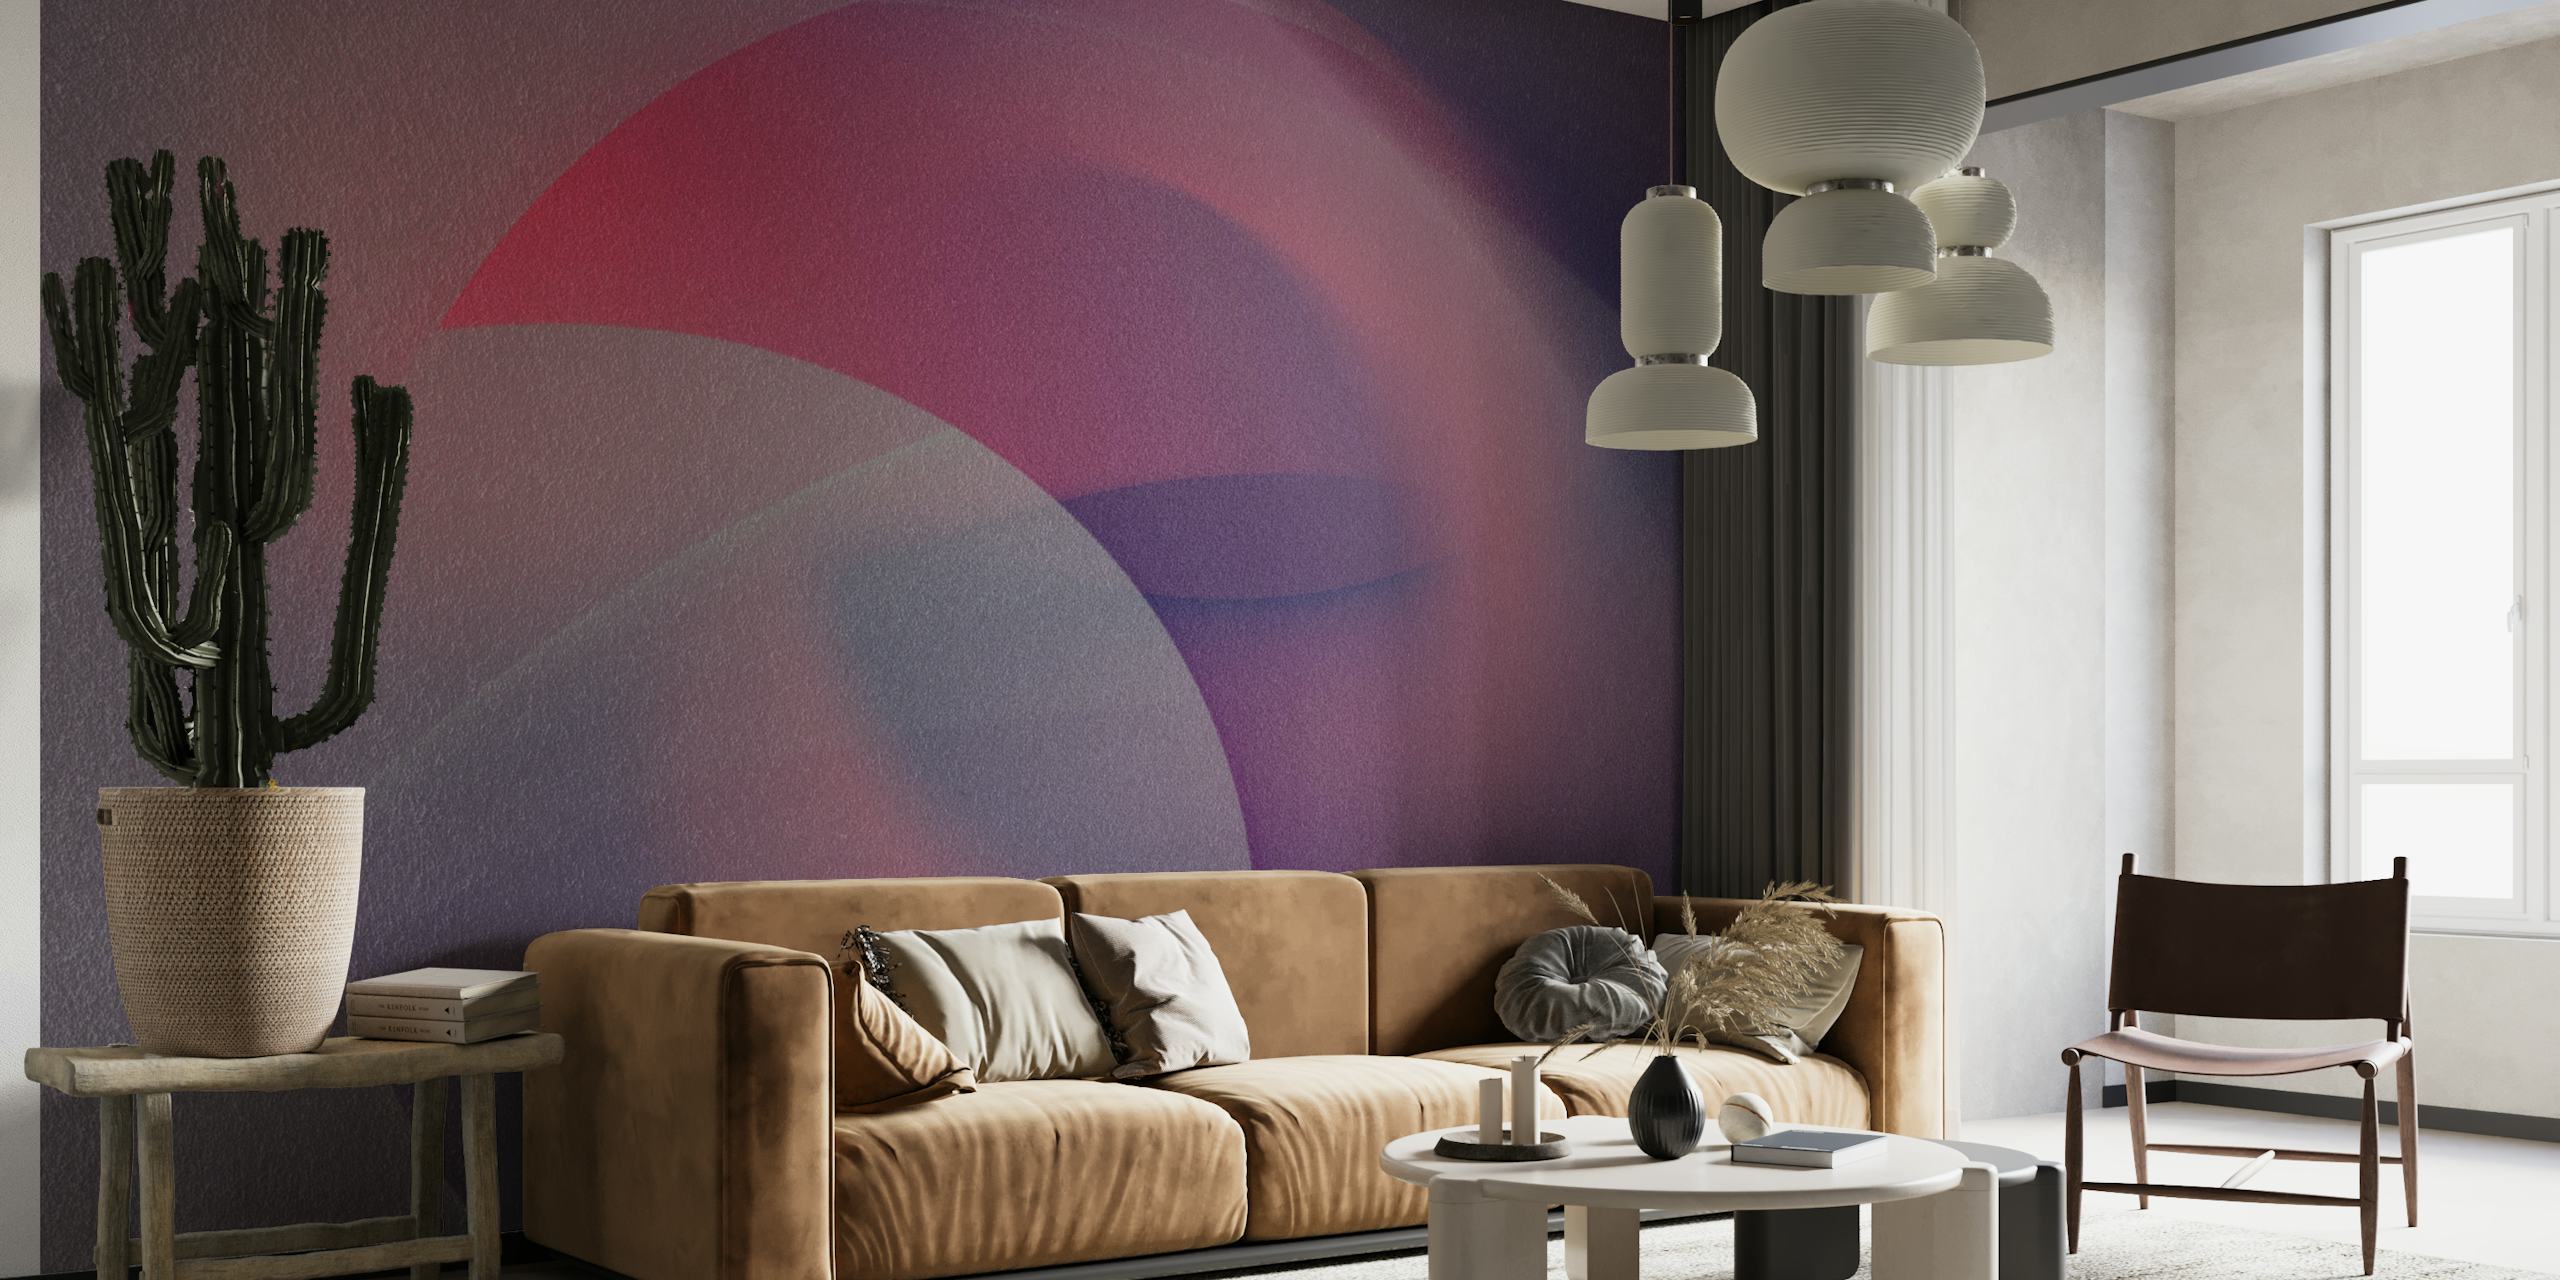 Abstrakti aikamatka-aiheinen seinämaalaus, jossa limittyvät ympyrät violetin ja punaisen sävyissä